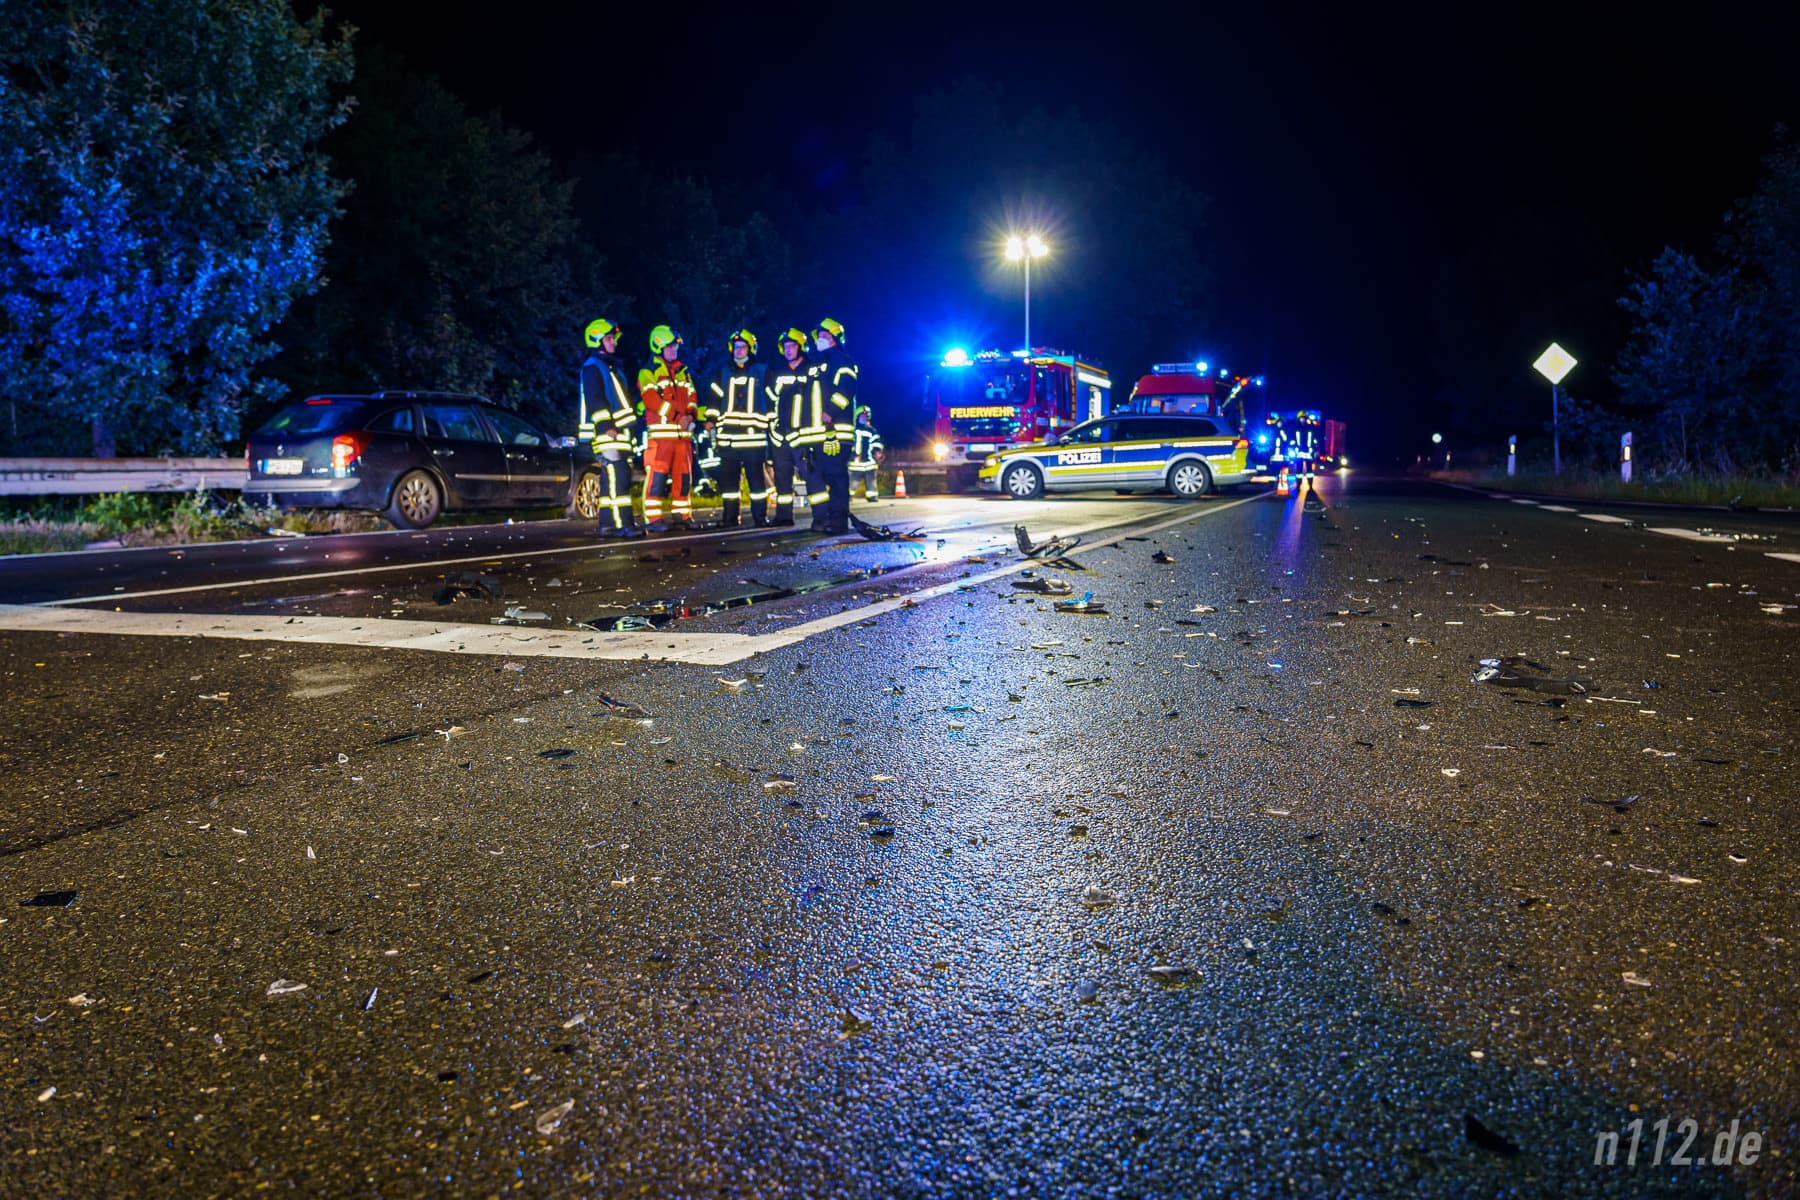 Großes Trümmerfeld: Die Unfallstelle an der Einmündung zum Maxi-Autohof an der B442 am Freitagabend (Foto: n112.de/Stefan Hillen)